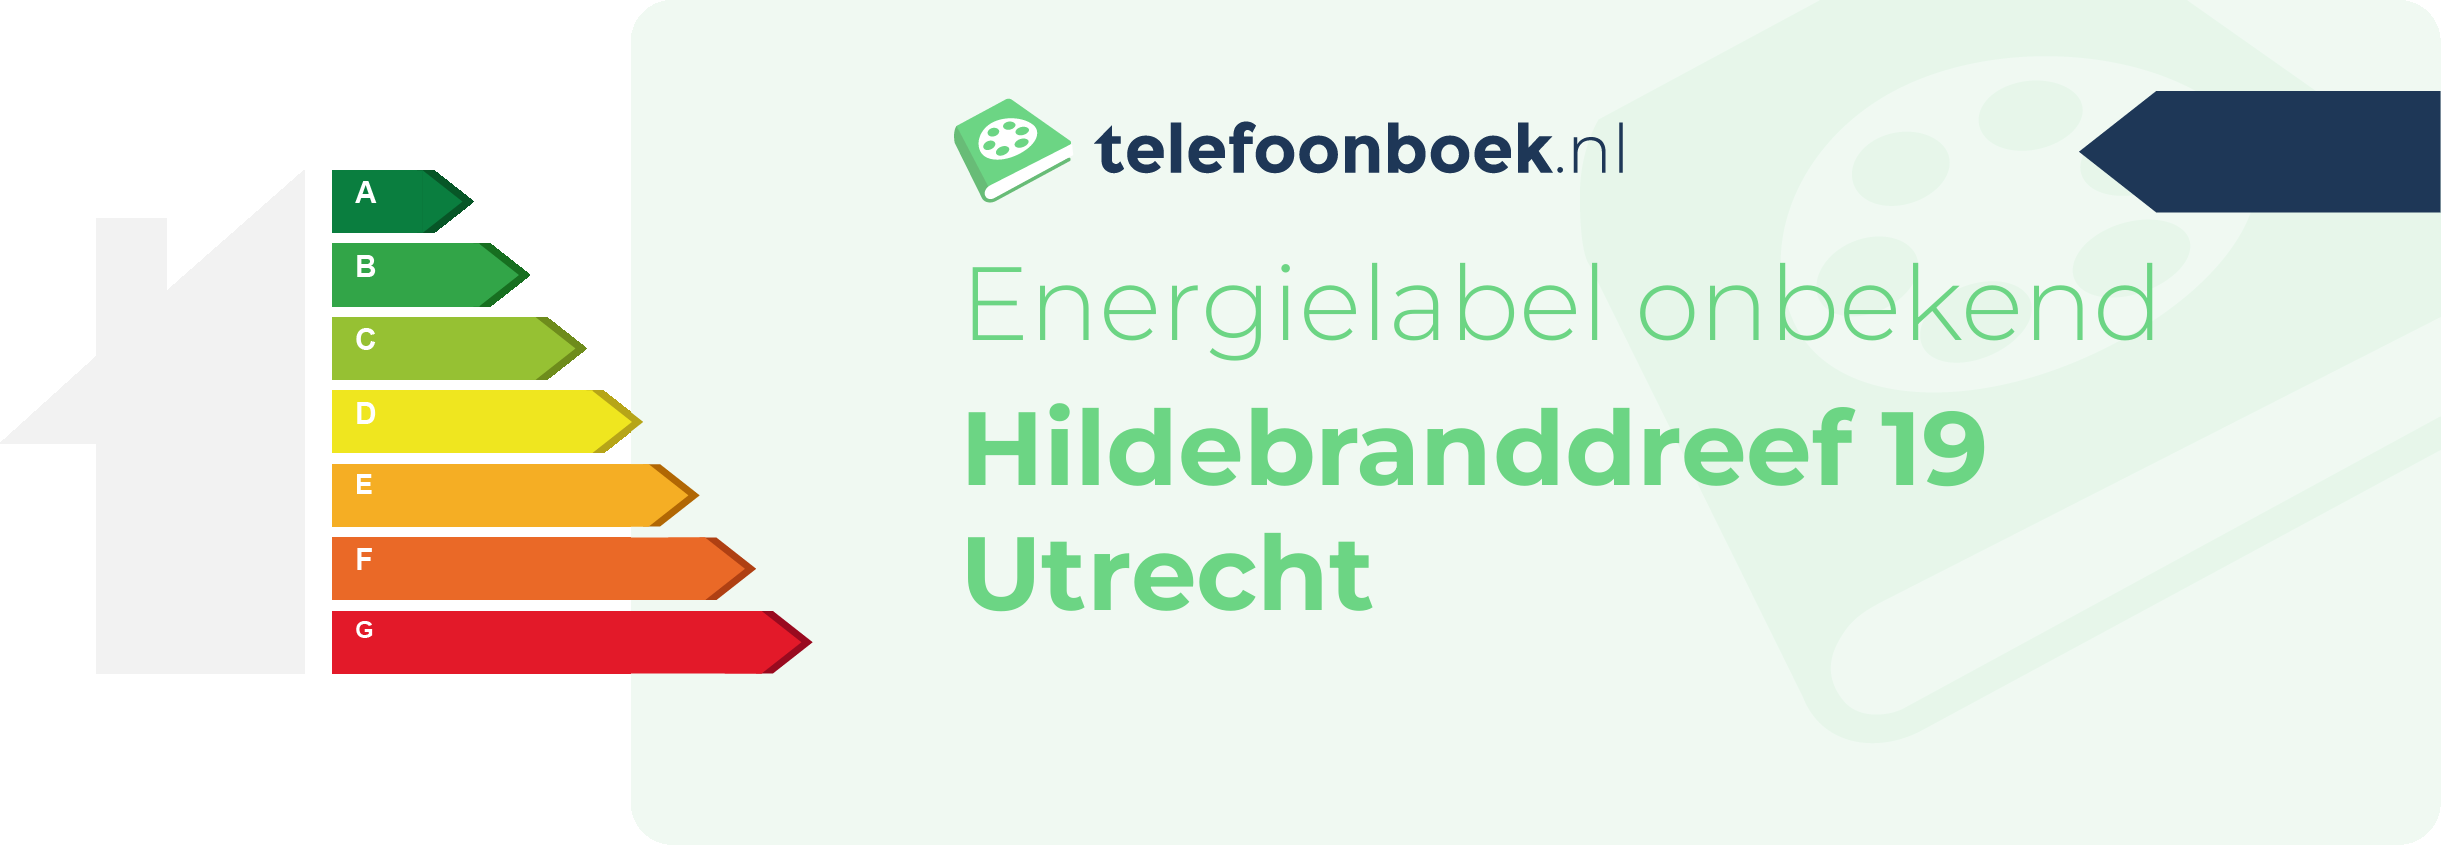 Energielabel Hildebranddreef 19 Utrecht